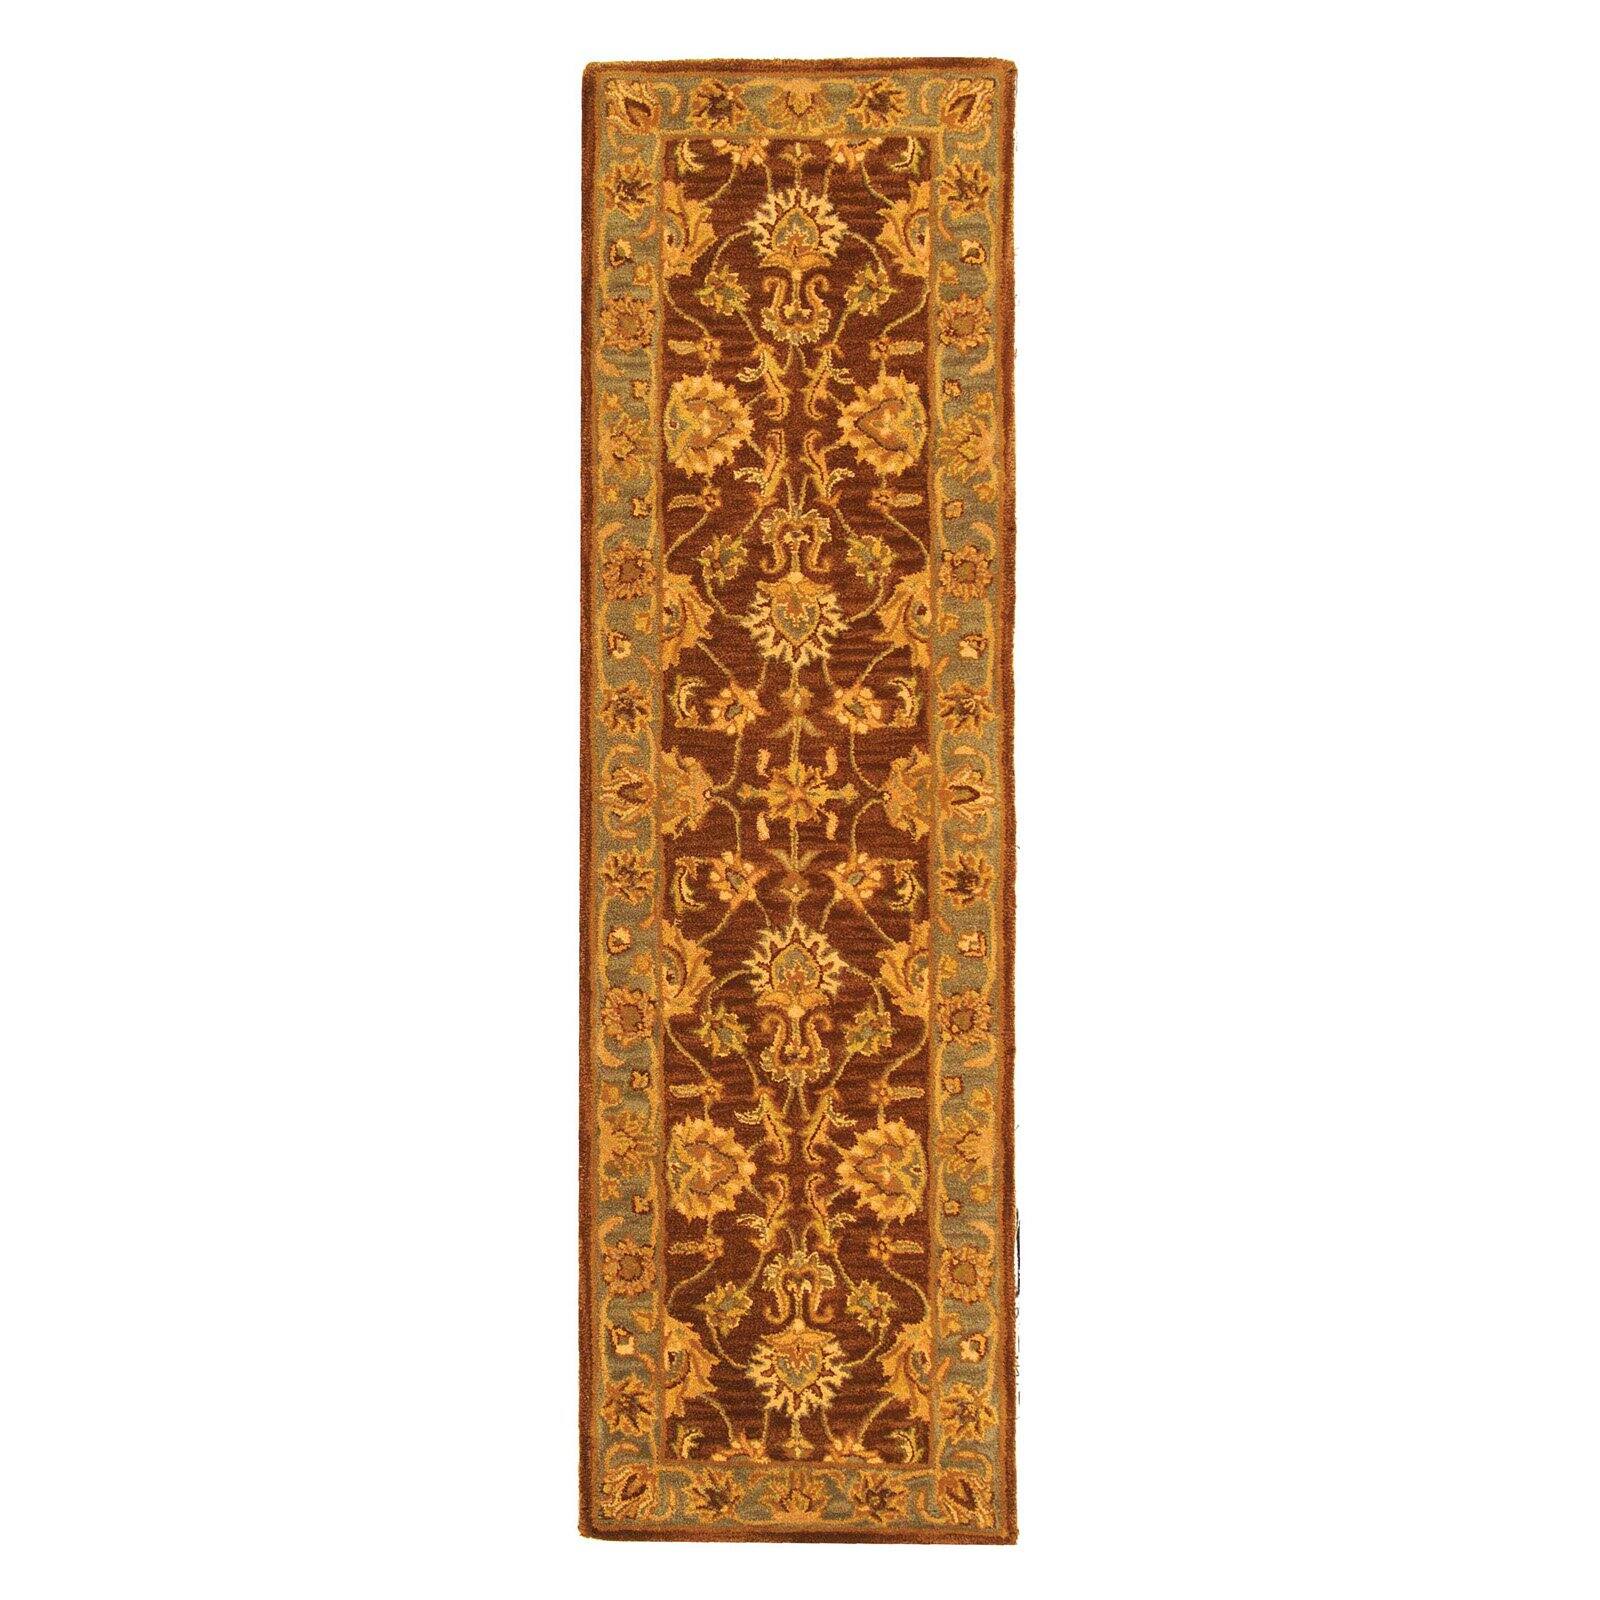 SAFAVIEH Heritage Regis Traditional Wool Area Rug, Brown/Blue, 8'3" x 11' - image 3 of 9